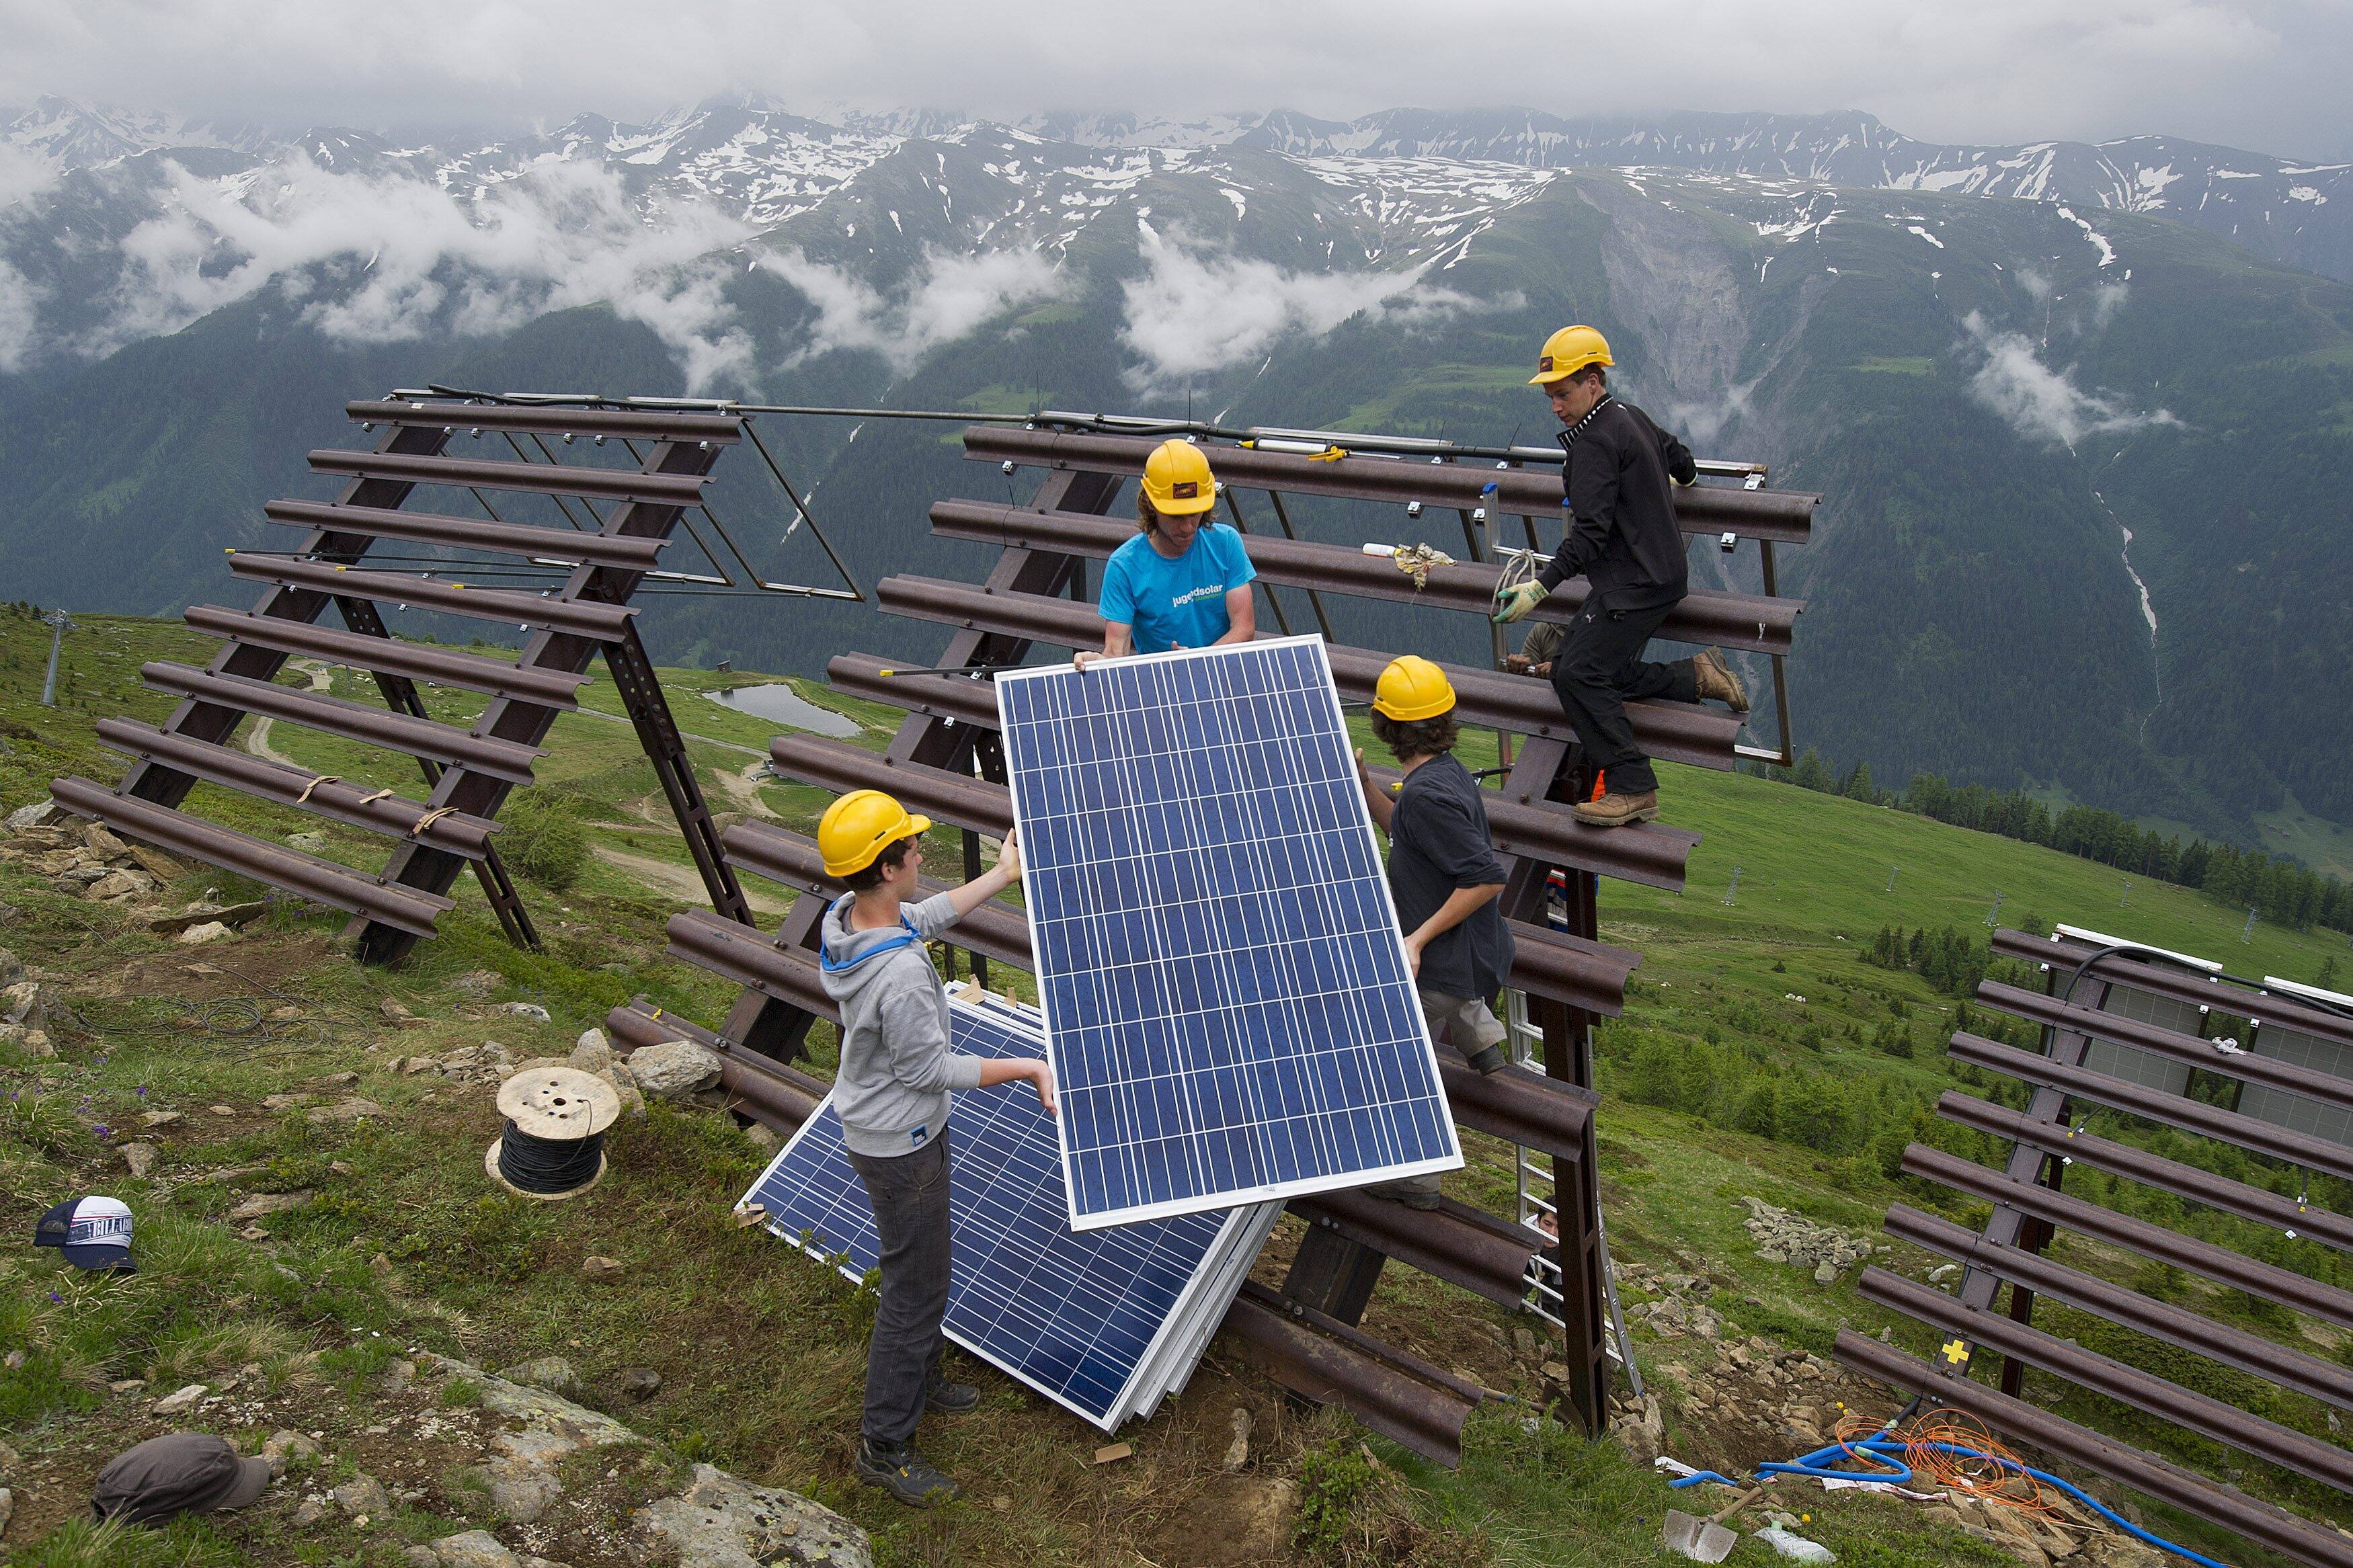 image d'illustration: Des jeunes posent des panneaux solaires ou panneaux photovoltaiques sur des paravalanches, le 20 juin 2012, à Bellwald dans la Vallée de Conches, Haut-Valais.